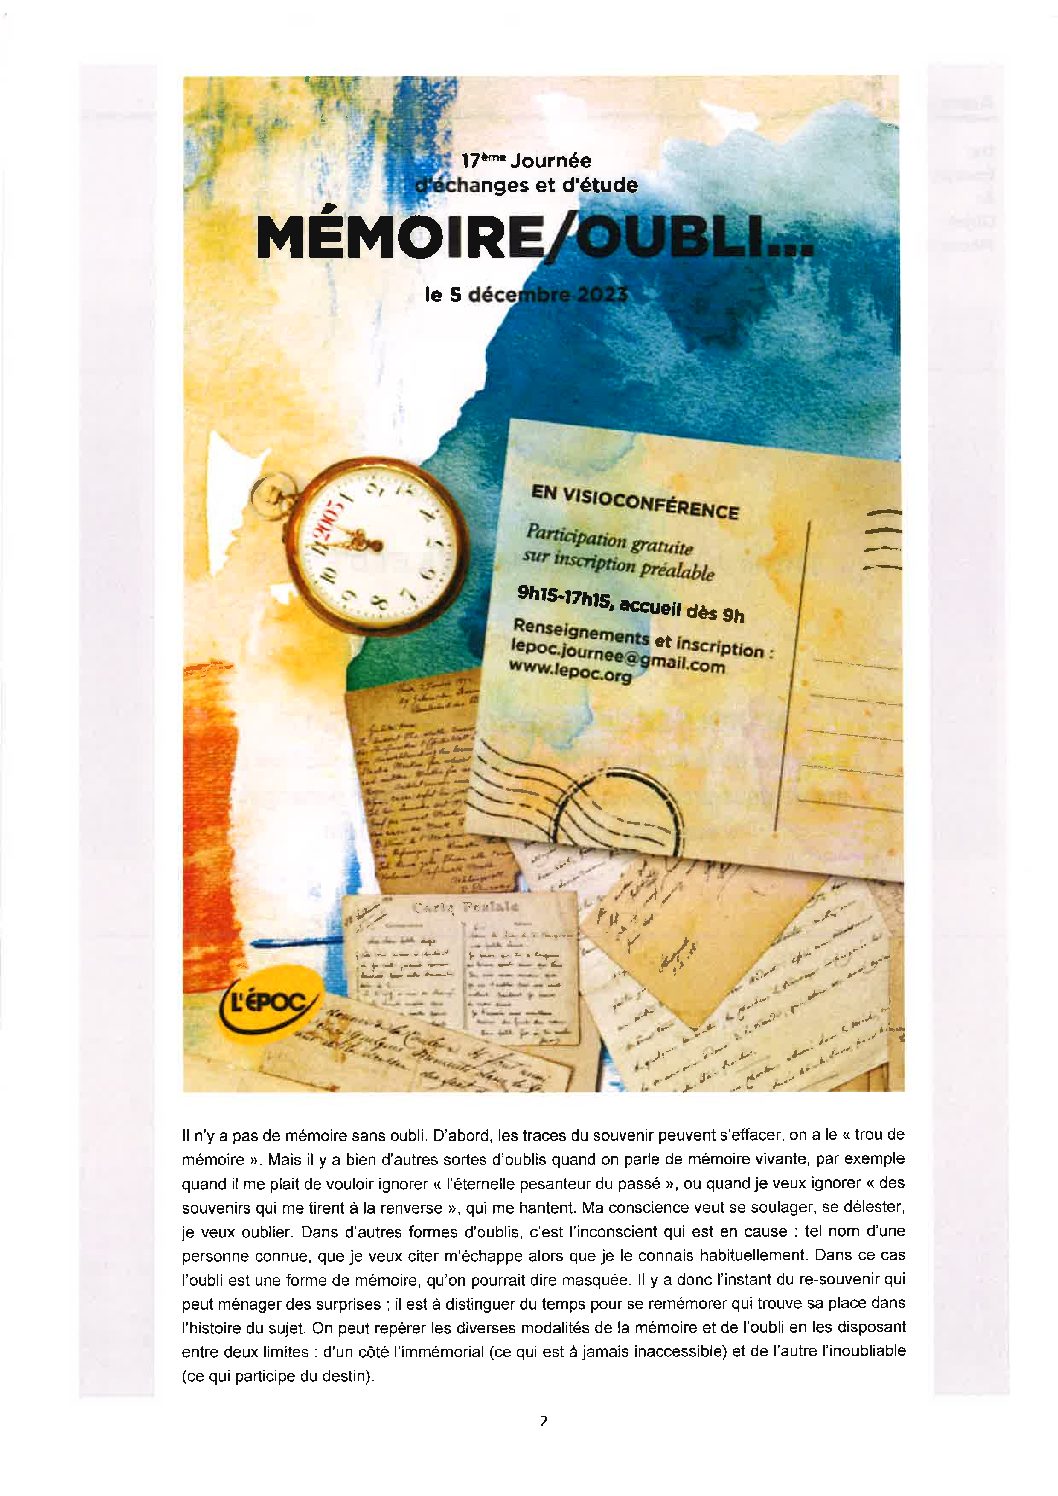 5 décembre 2023 : 9h15-17h15 – EPOC – Mémoire/oubli.